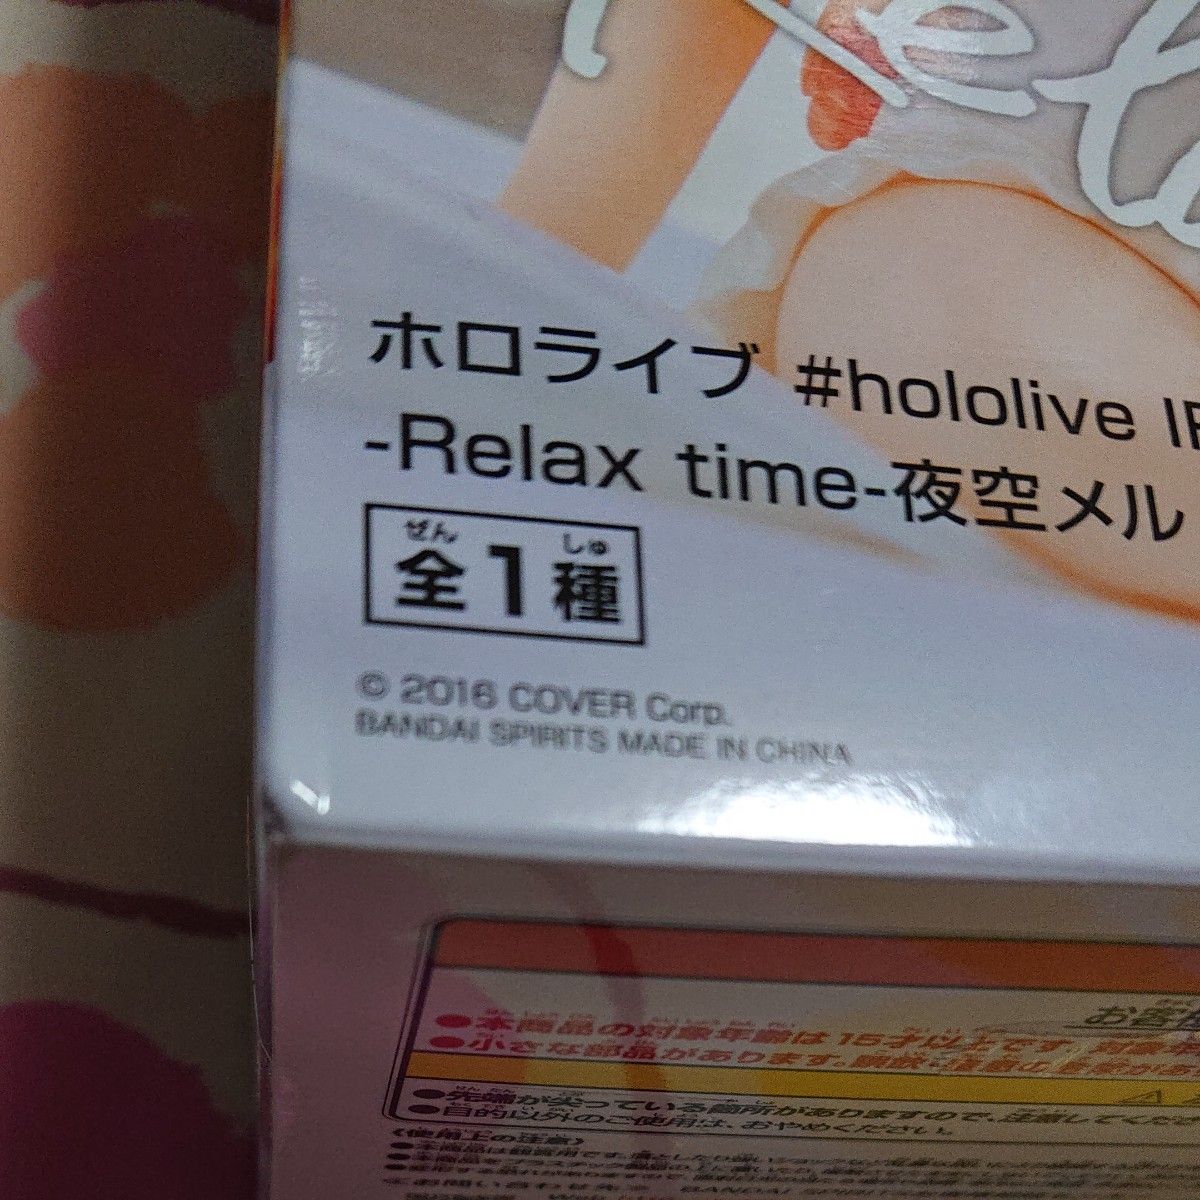 ホロライブ #hololive IF -Relax time- 夜空メル 大神ミオ 大空スバル フィギュアセット